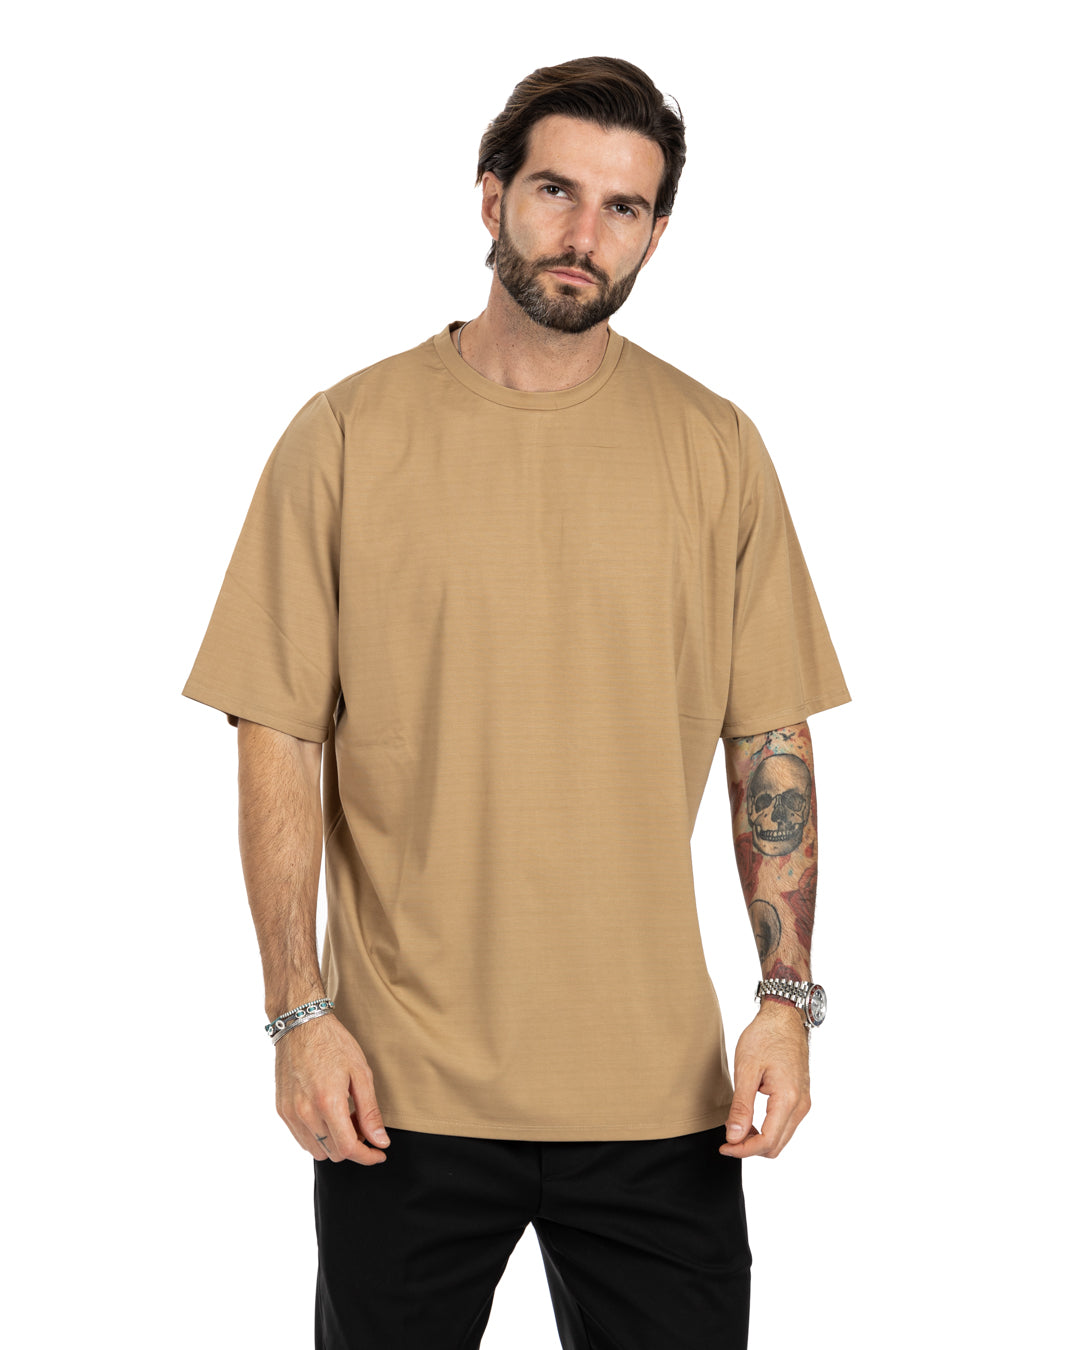 Aaaron - t-shirt beige oversize